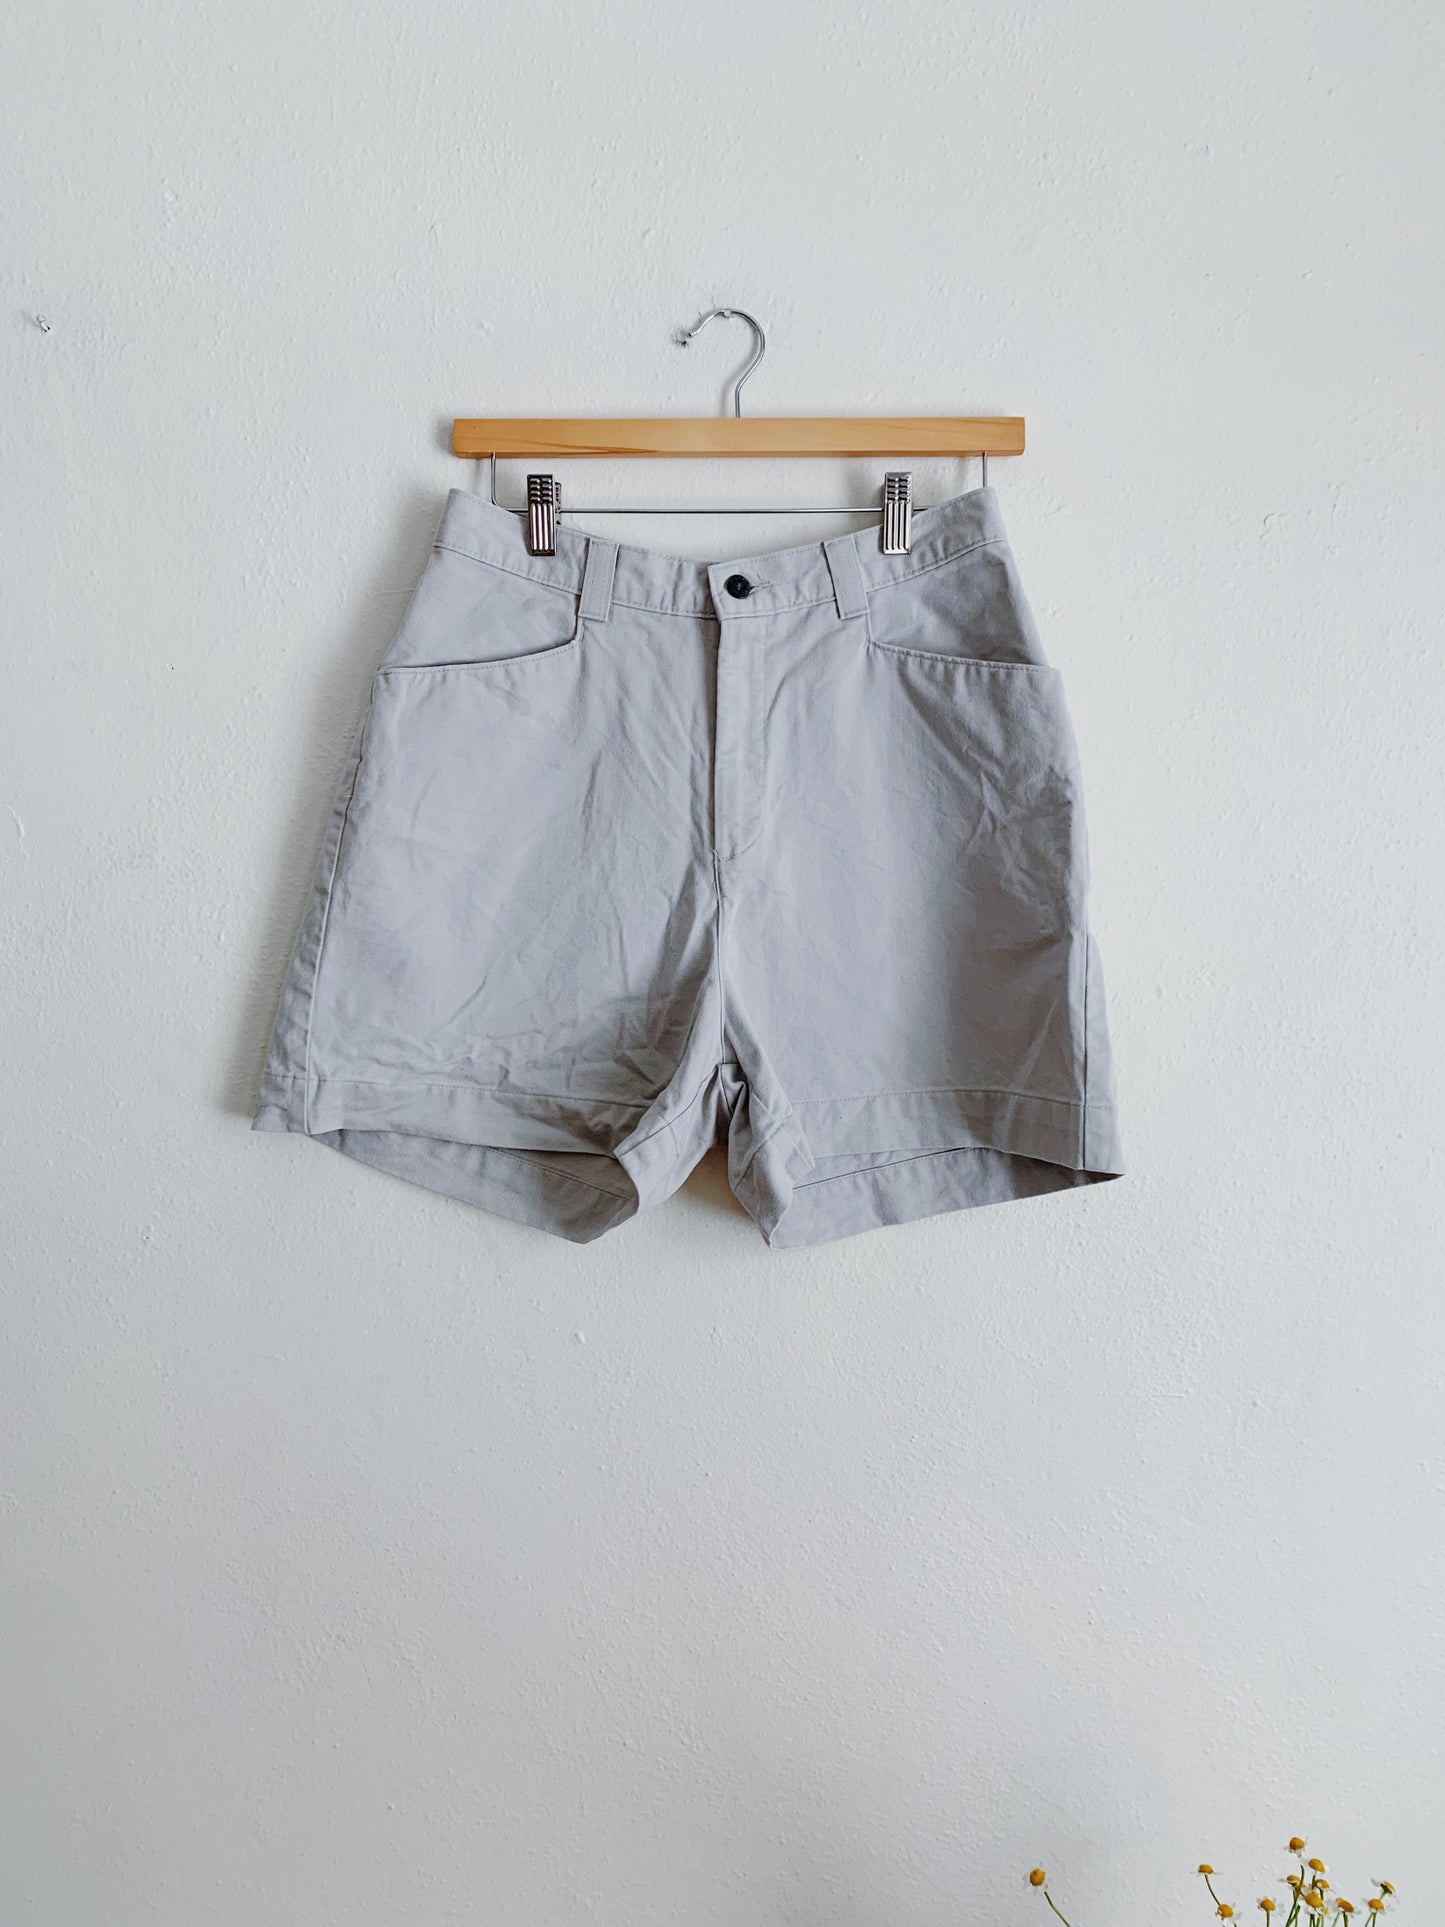 Vintage Lee Khaki Shorts (26x4)